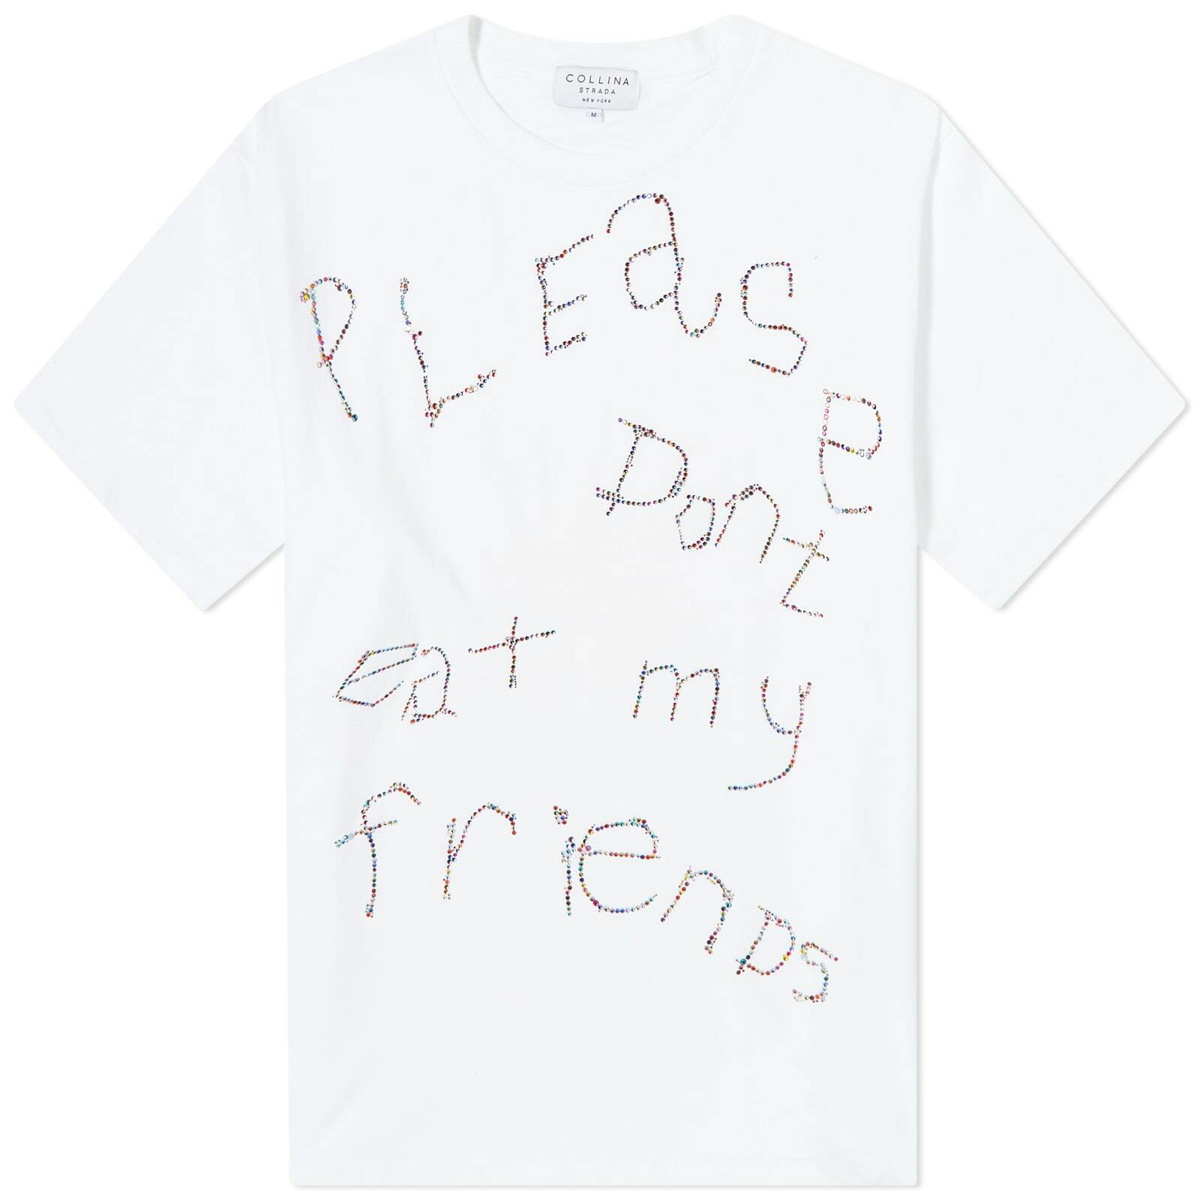 Friends White T shirt